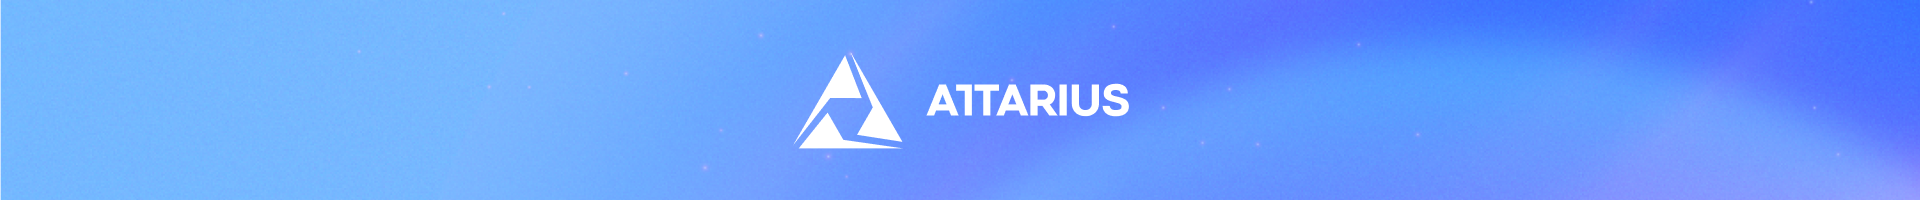 Attarius Banner